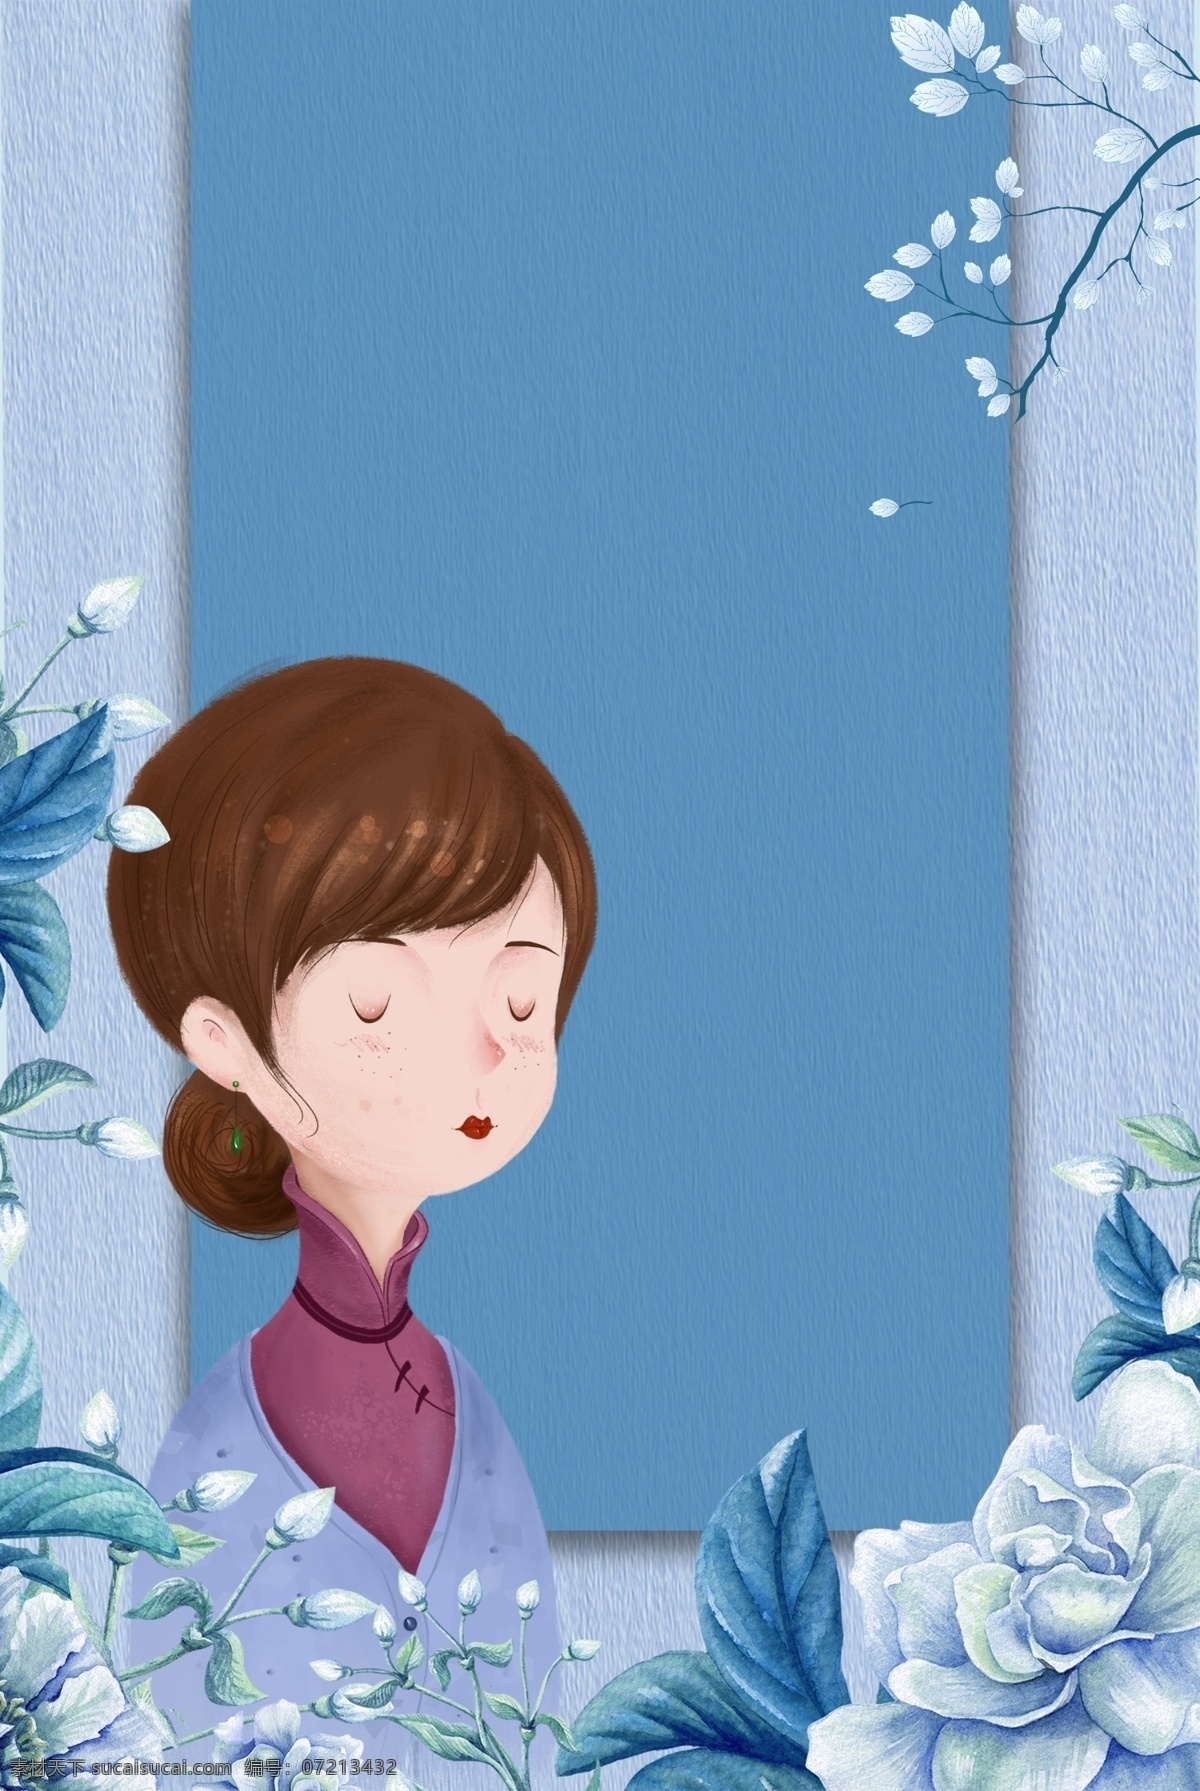 蓝色 手绘 母亲节 花卉 唯美 人物 背景 图形边框 蓝色背景 边框 花朵 清新 人物背景